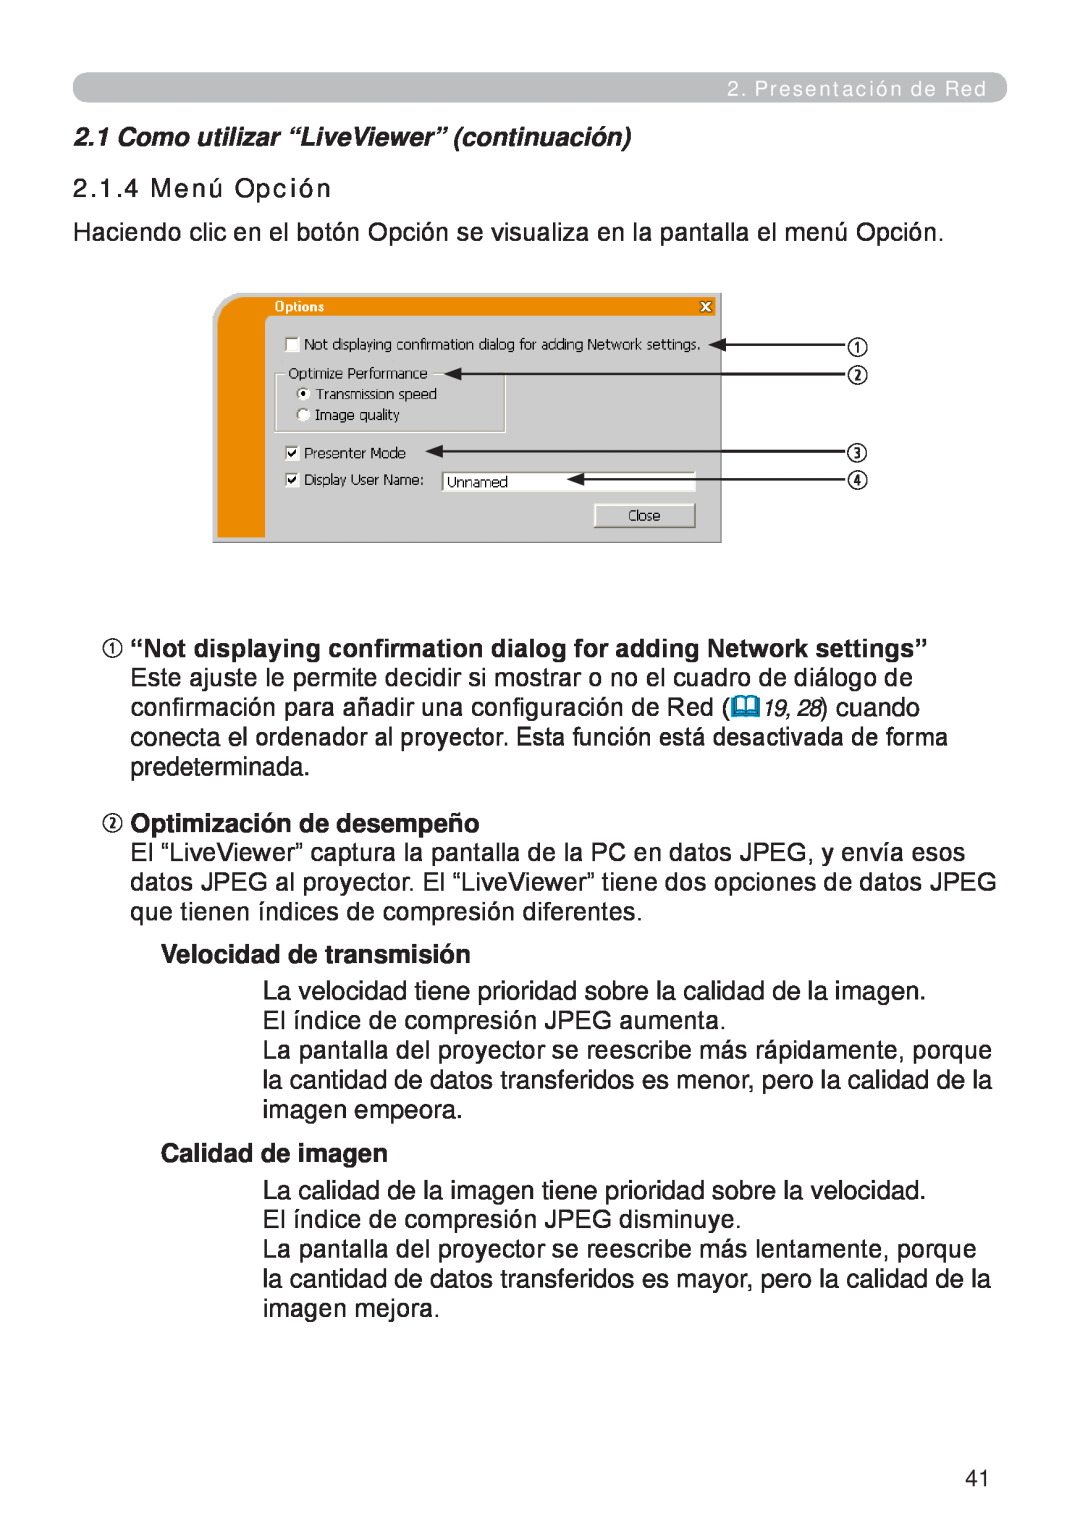 InFocus W60, W61 manual 2.1.4 Menú Opción,  Optimización de desempeño, Velocidad de transmisión, Calidad de imagen 